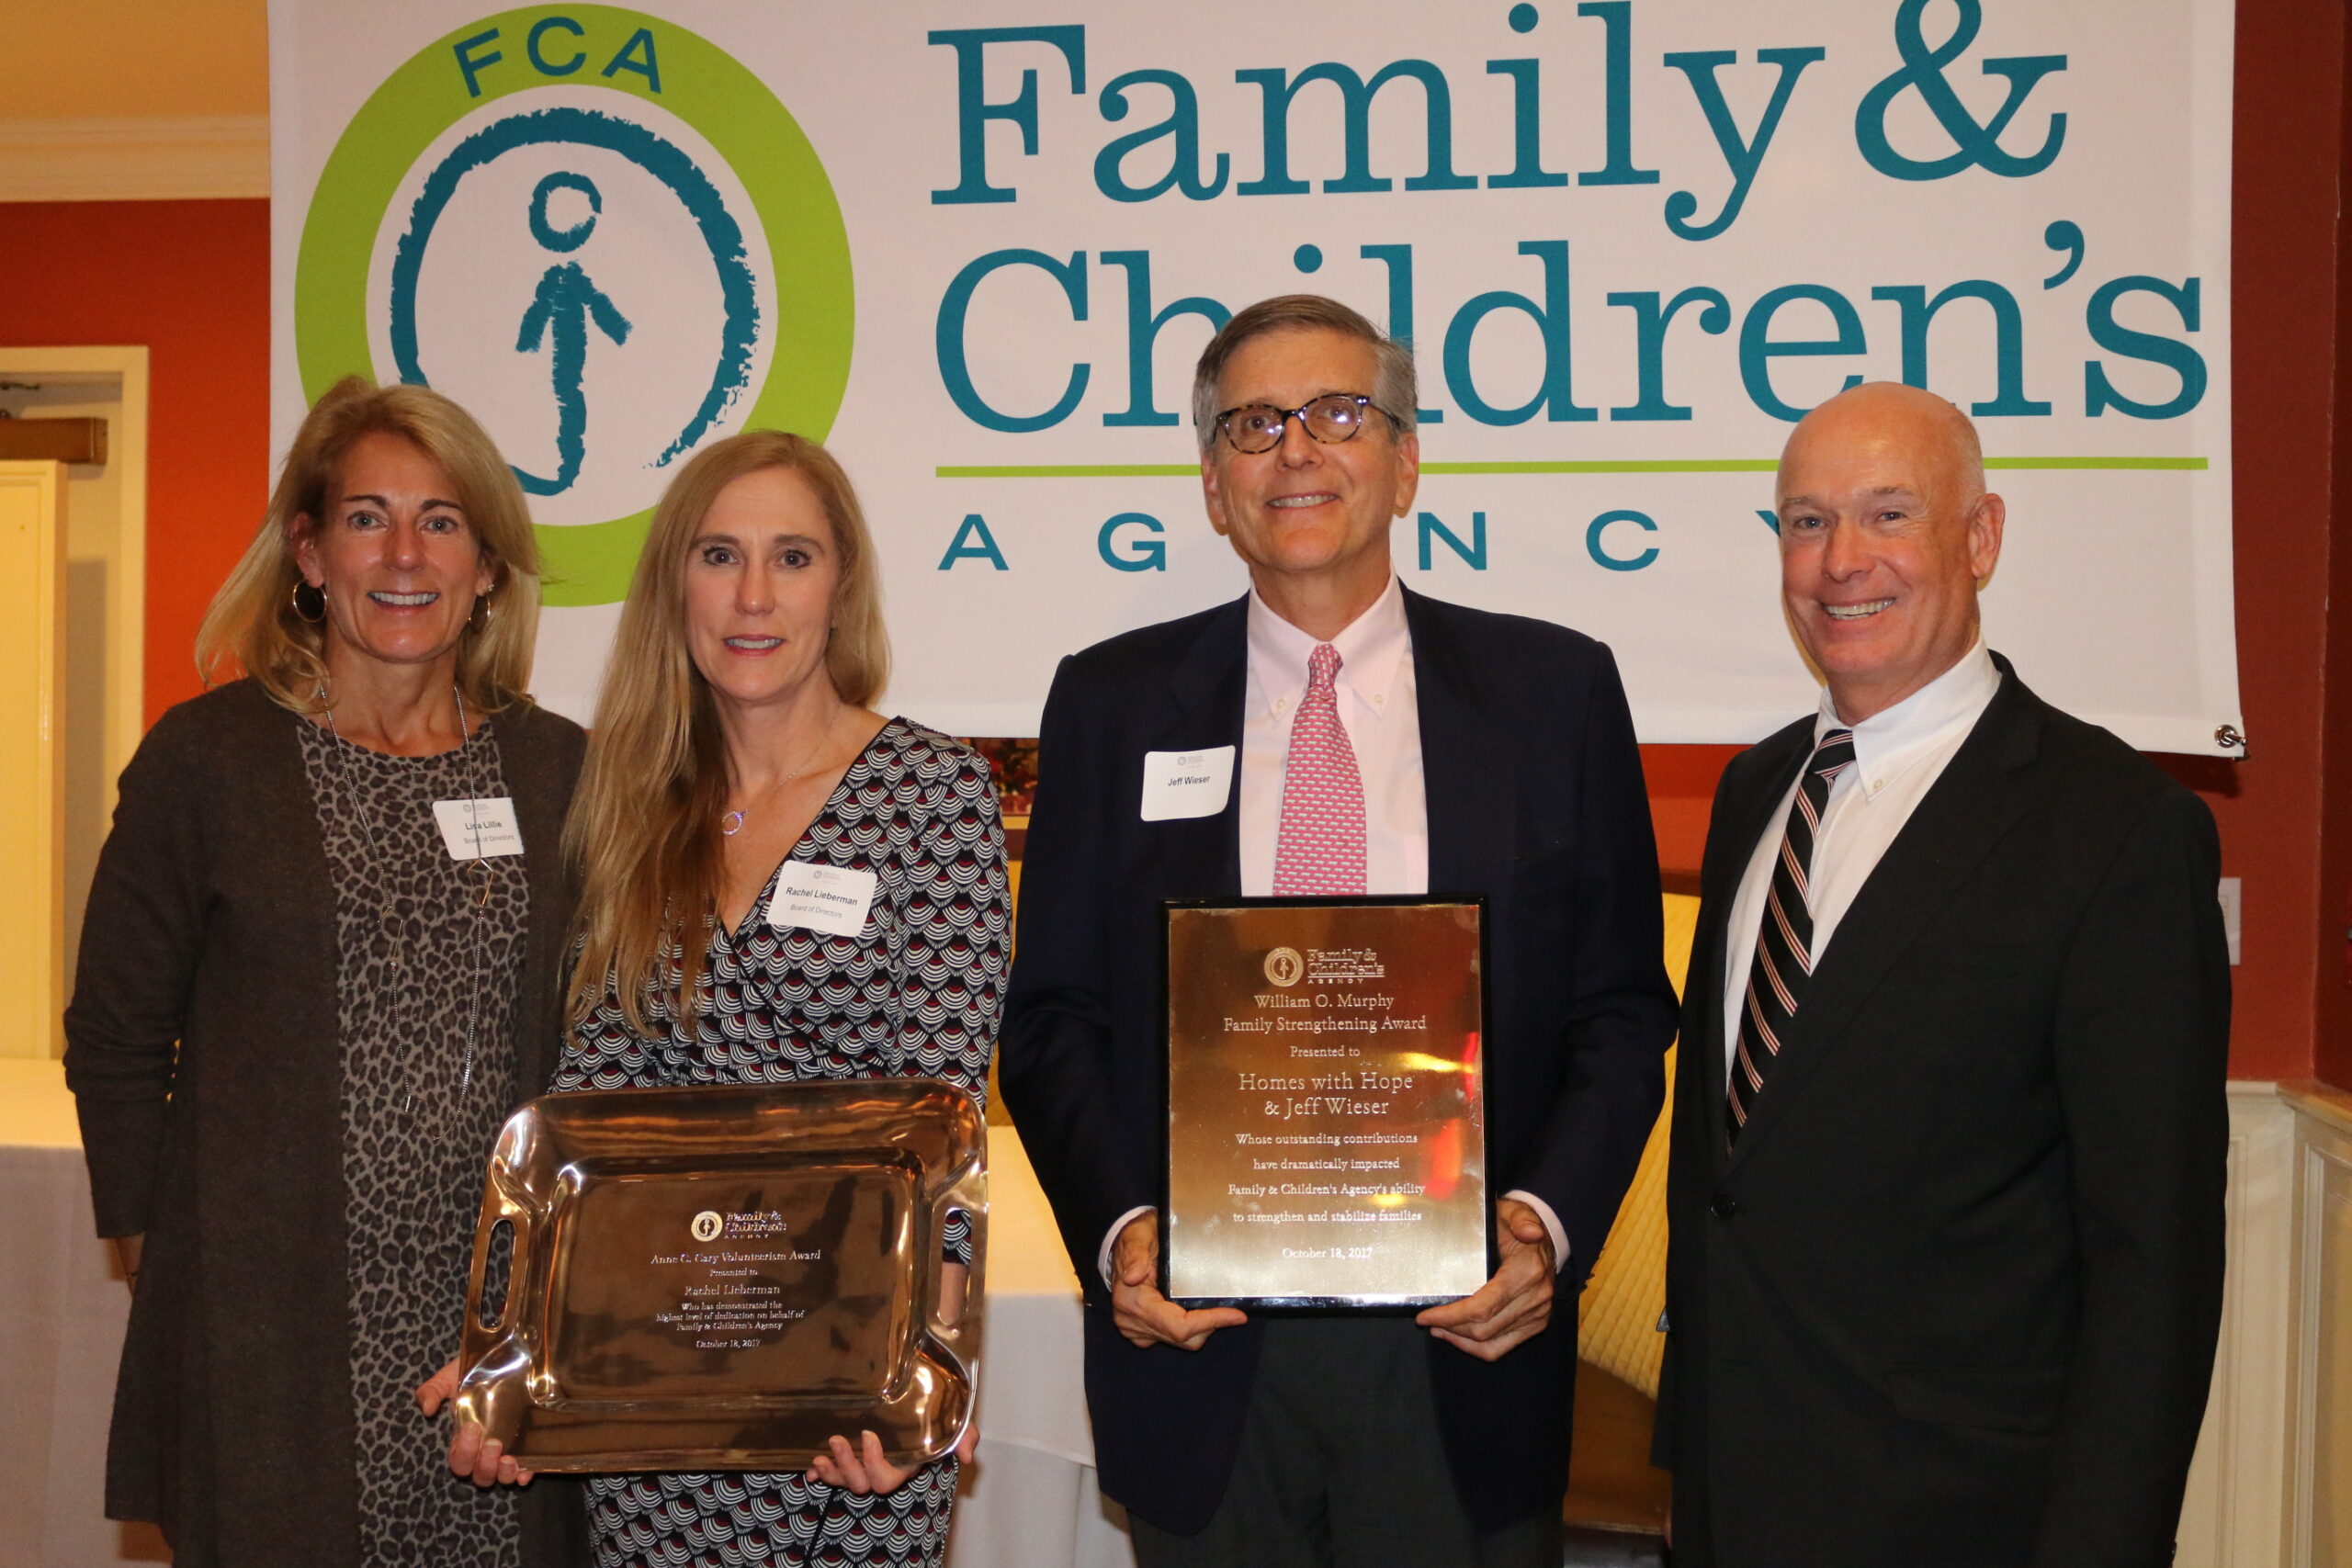 Family & Children’s Agency Announces Family Strengthening and Volunteer Awards